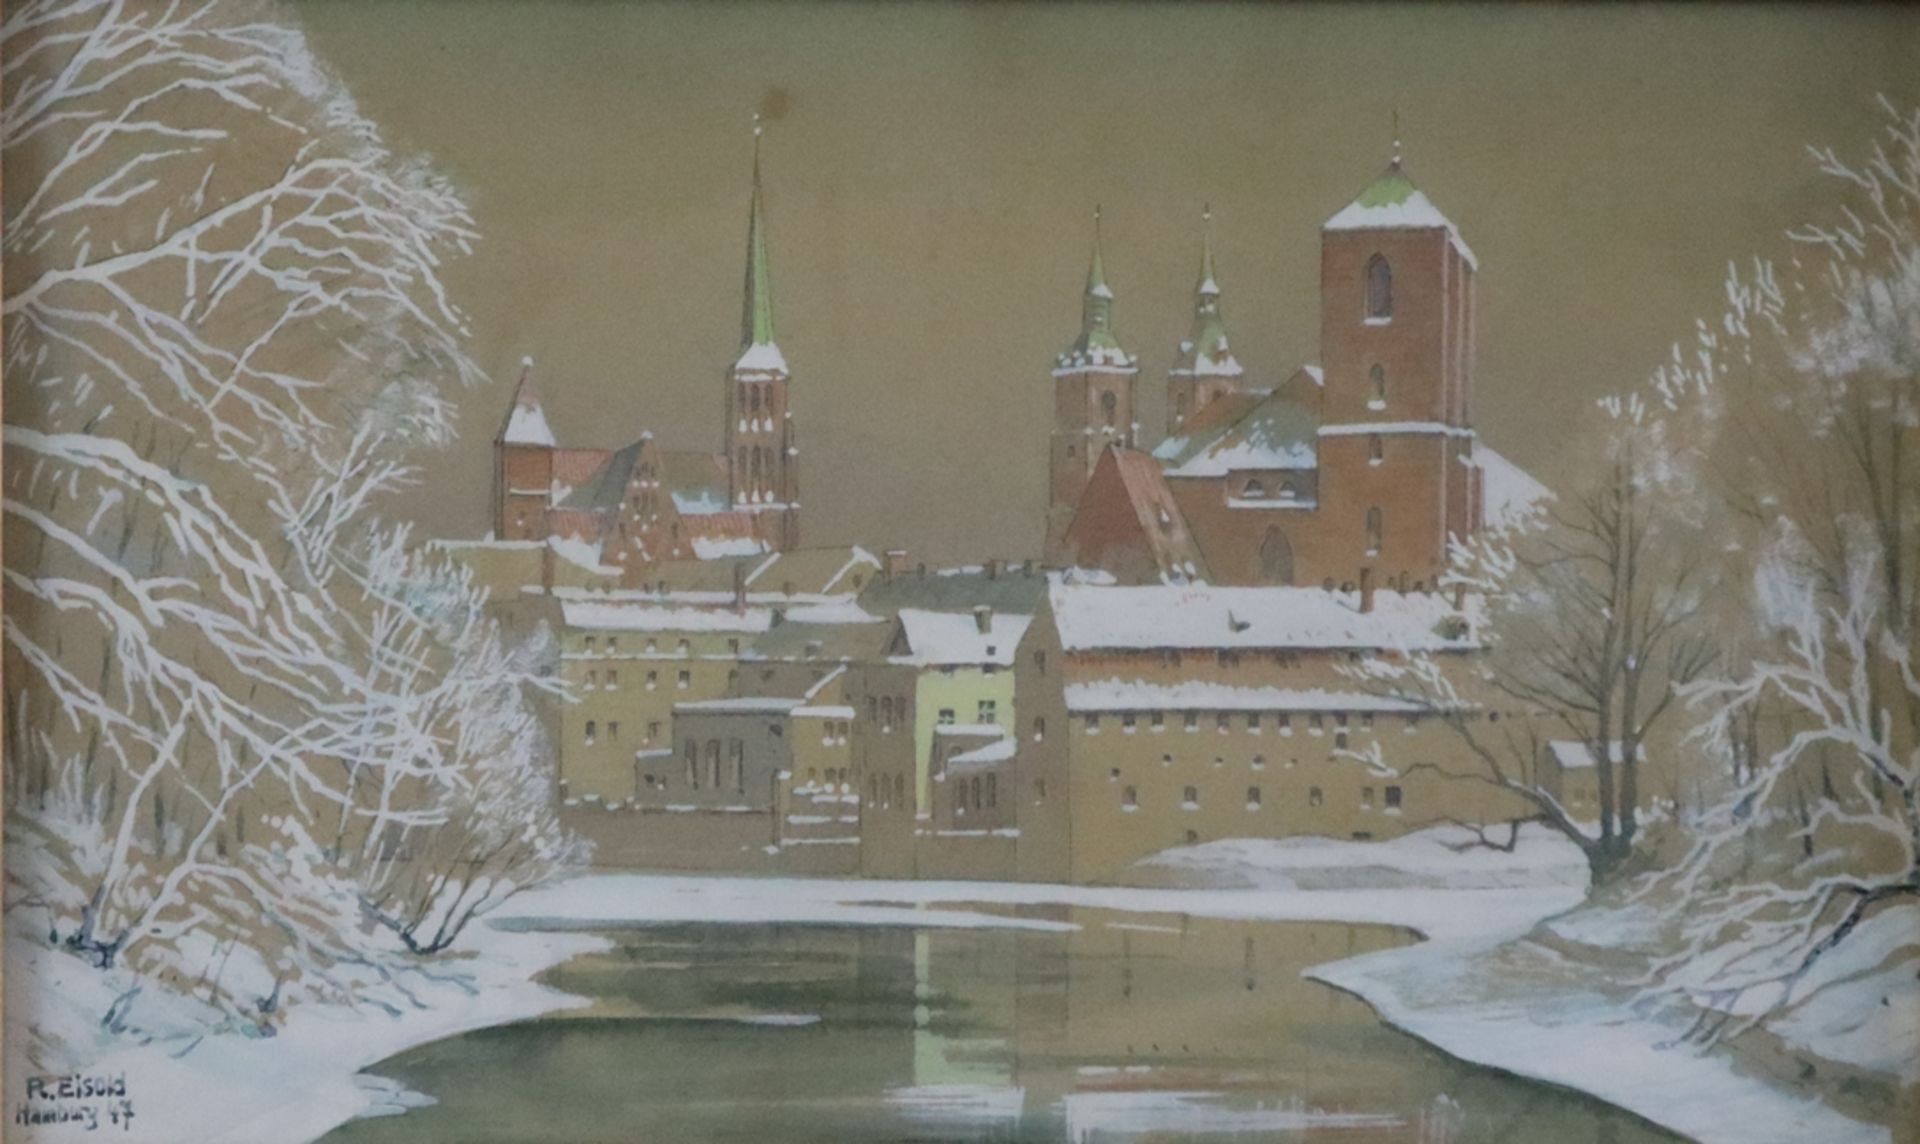 Eisold, R. (20. Jh.) - Blick auf verschneite Stadtarchitektur, 1947, Aquarell auf braunem Papier, u